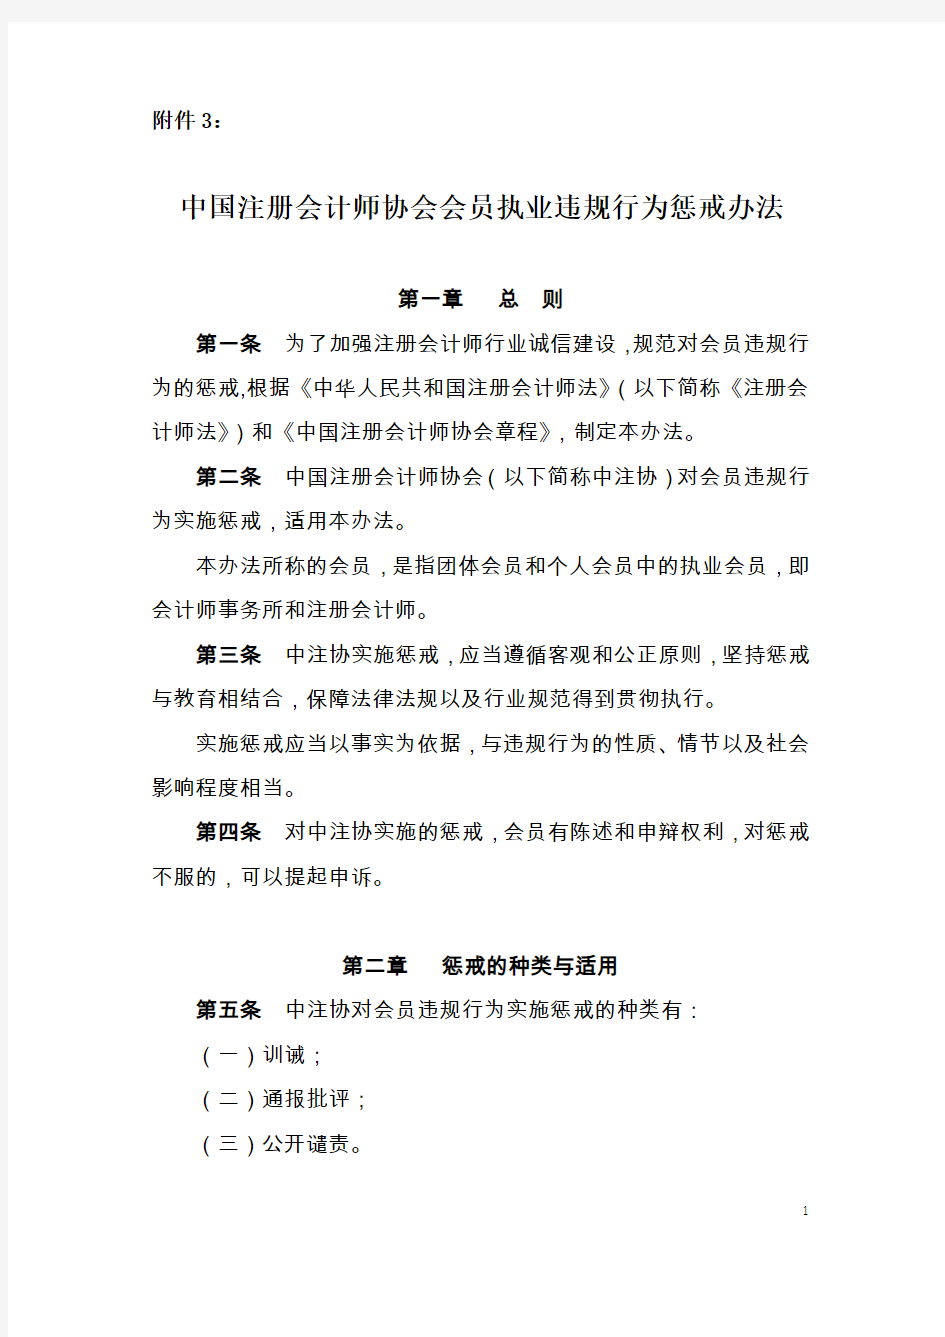 中国注册会计师协会会员执业违规行为惩戒办法